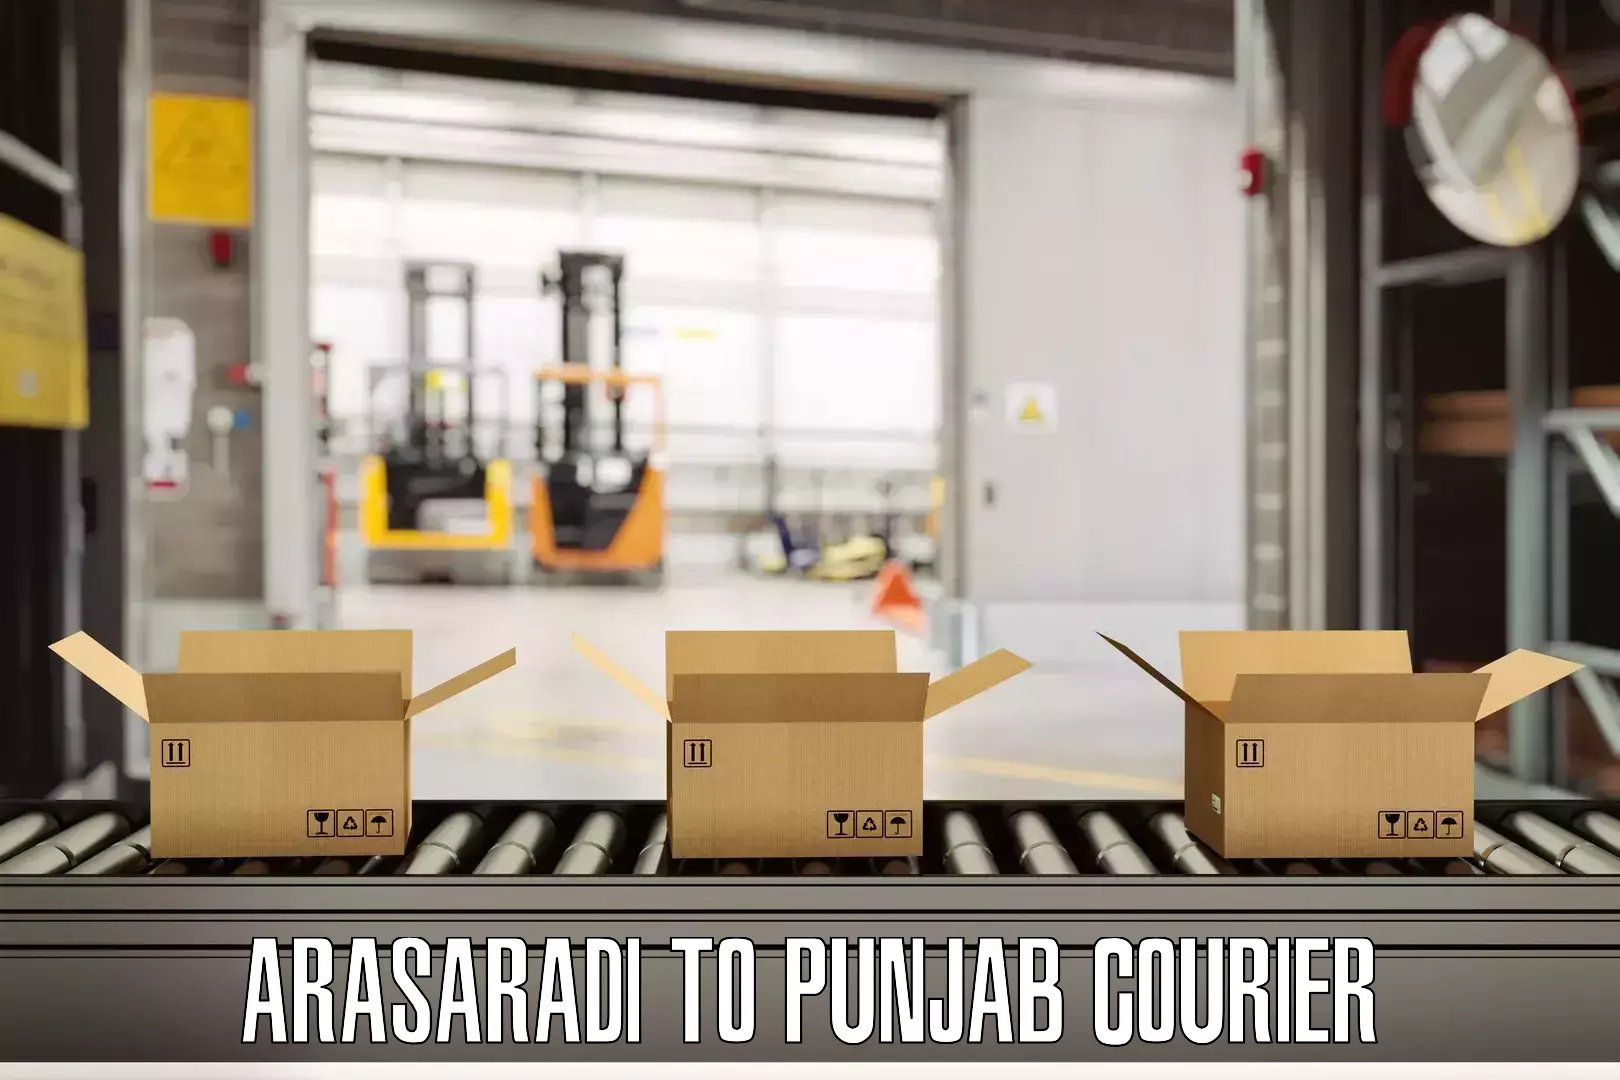 Luggage shipping options in Arasaradi to Central University of Punjab Bathinda